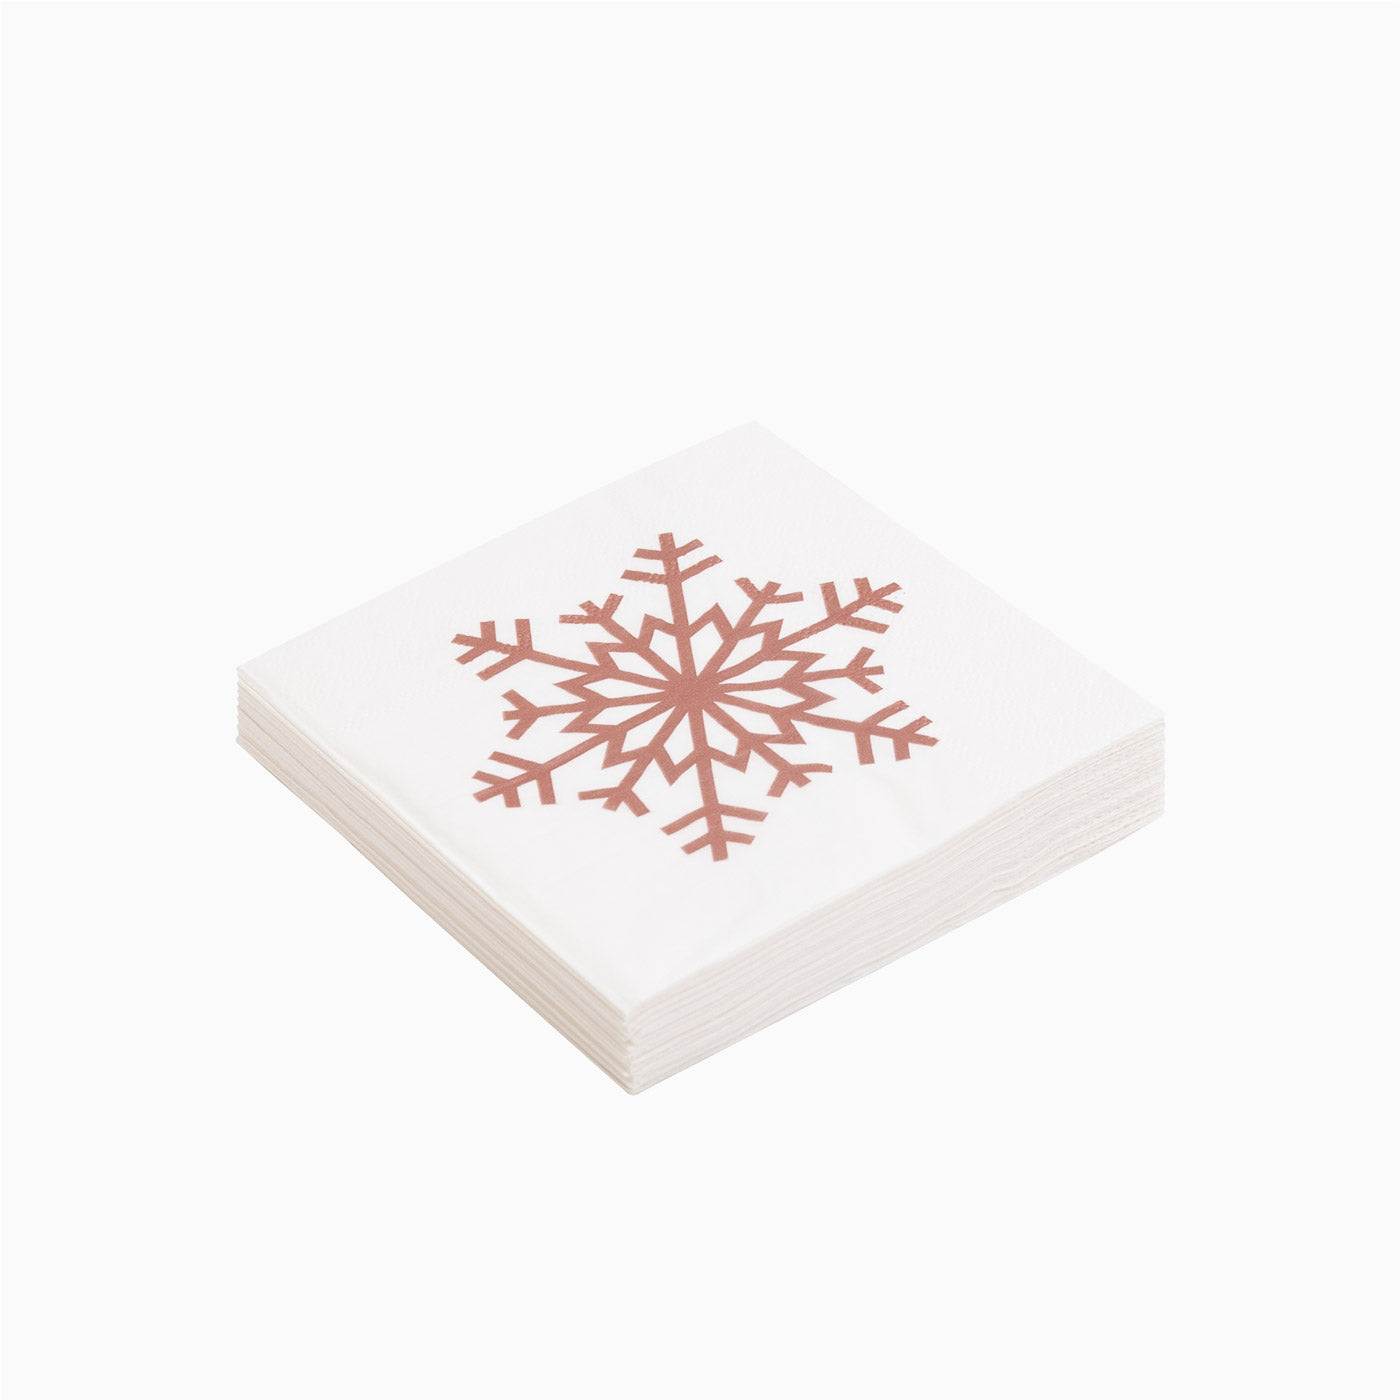 25x25 cm Papier Servietten Weihnachten Schneeflocke Roségold